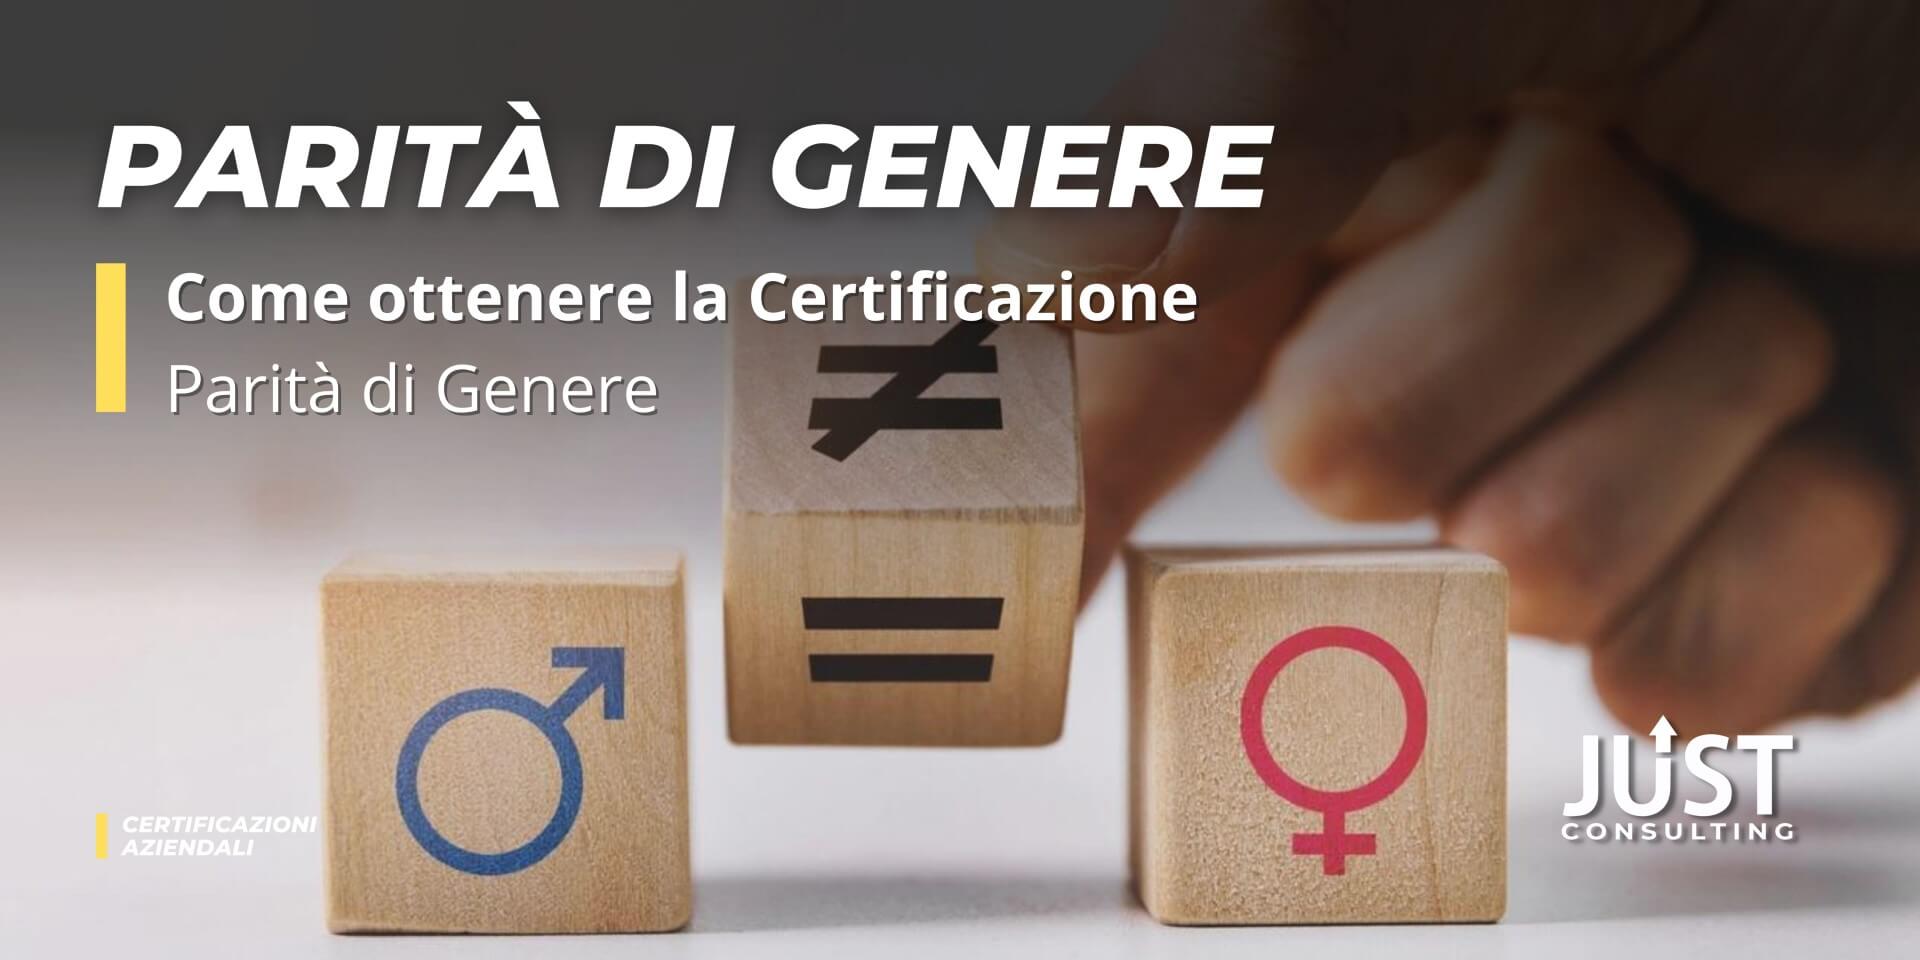 Certificazione parità di genere, come ottenere la certificazione UNI PdR 125:2022, consulenza e formazione a Bologna, Modena, Ferrara, Emilia-Romagna e Lombardia